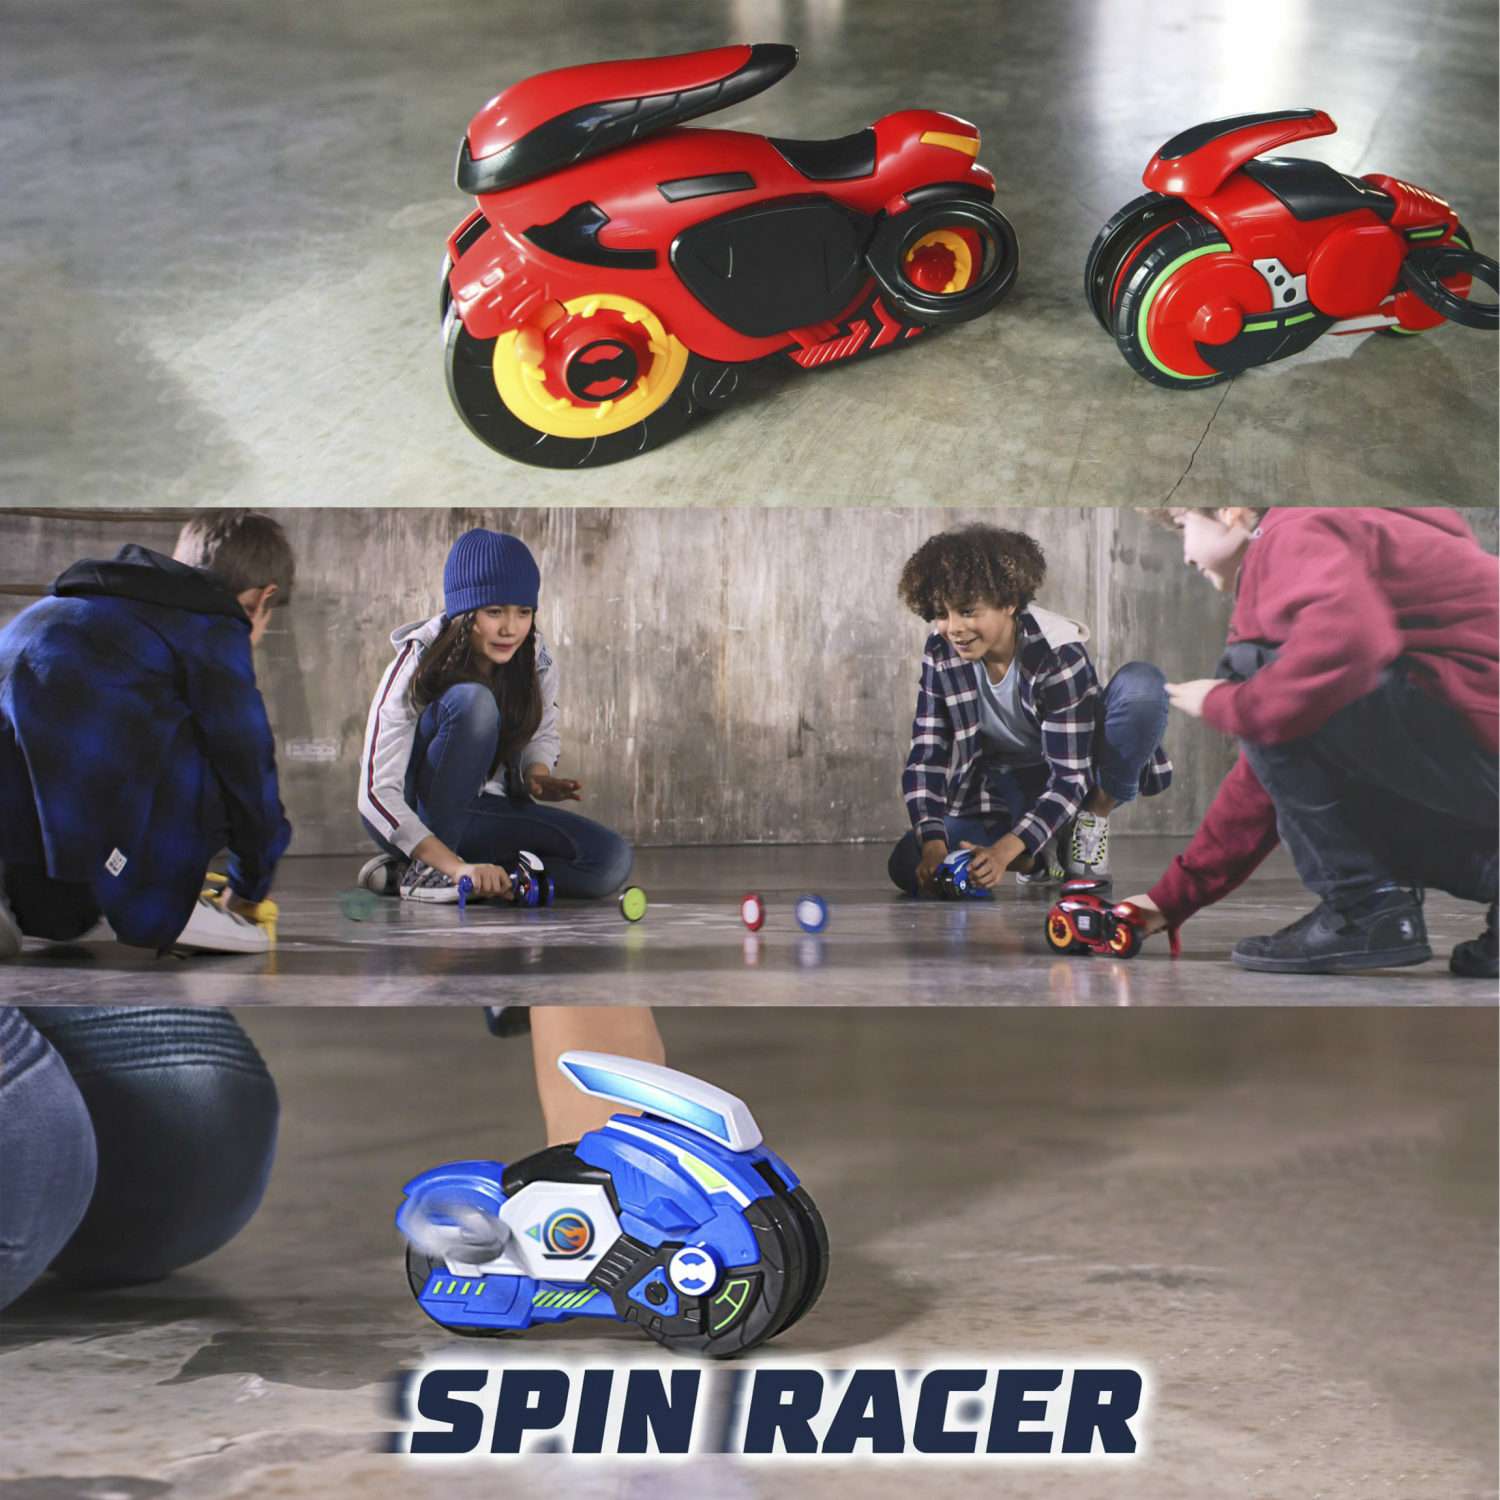 Игровой набор Hot Wheels Spin Racer Красный Мустанг игрушечный мотоцикл с колесом-гироскопом Т19372 - фото 6